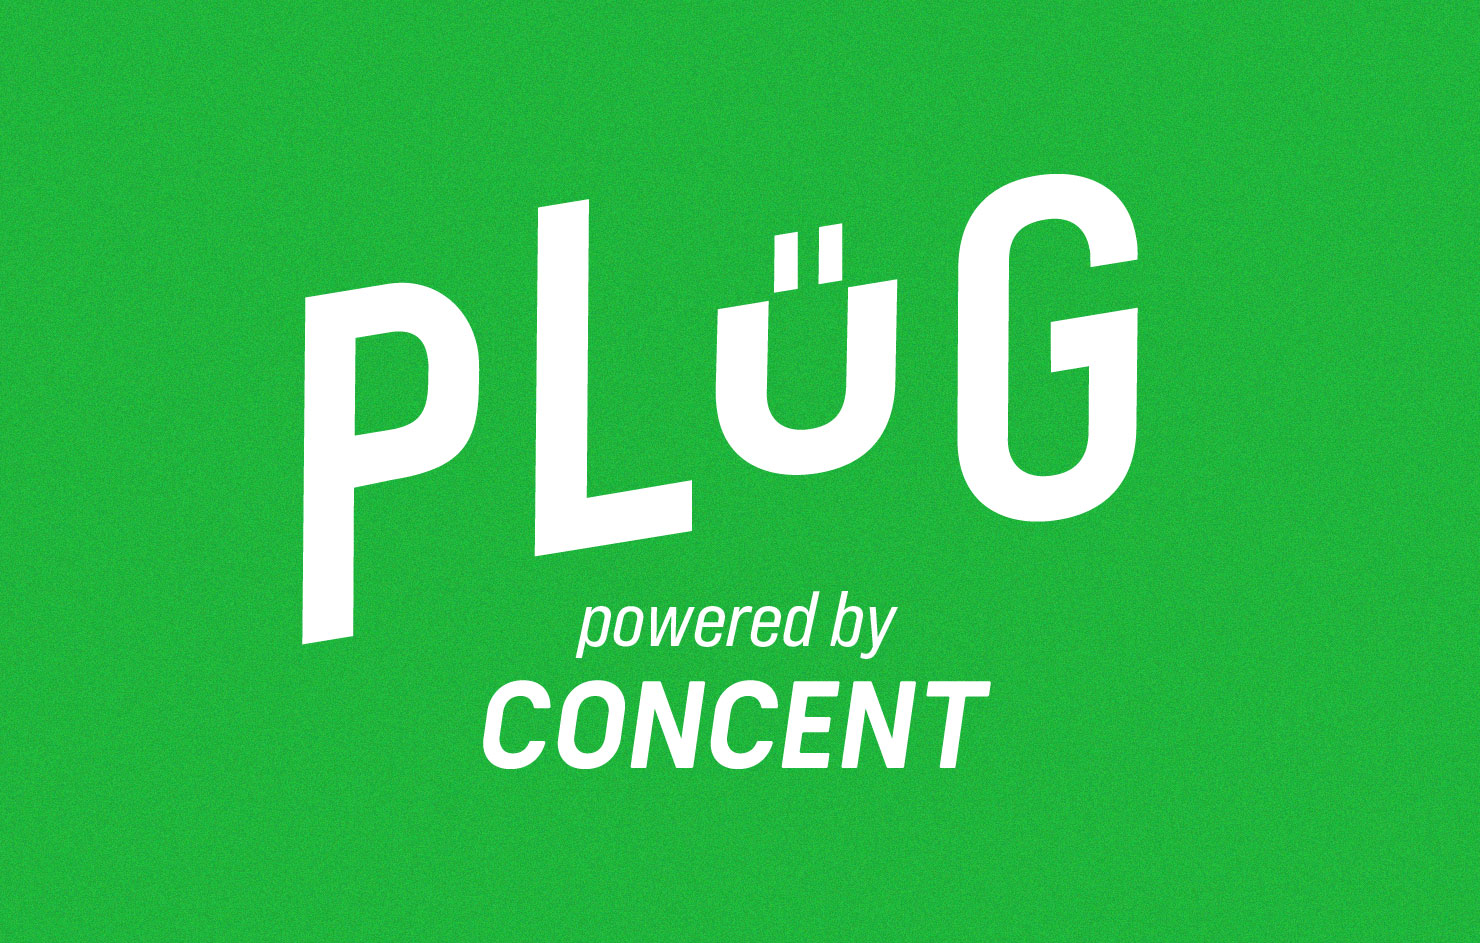 株式会社コンセントの調査サービス「PLUG powered by CONCENT」のロゴ画像。